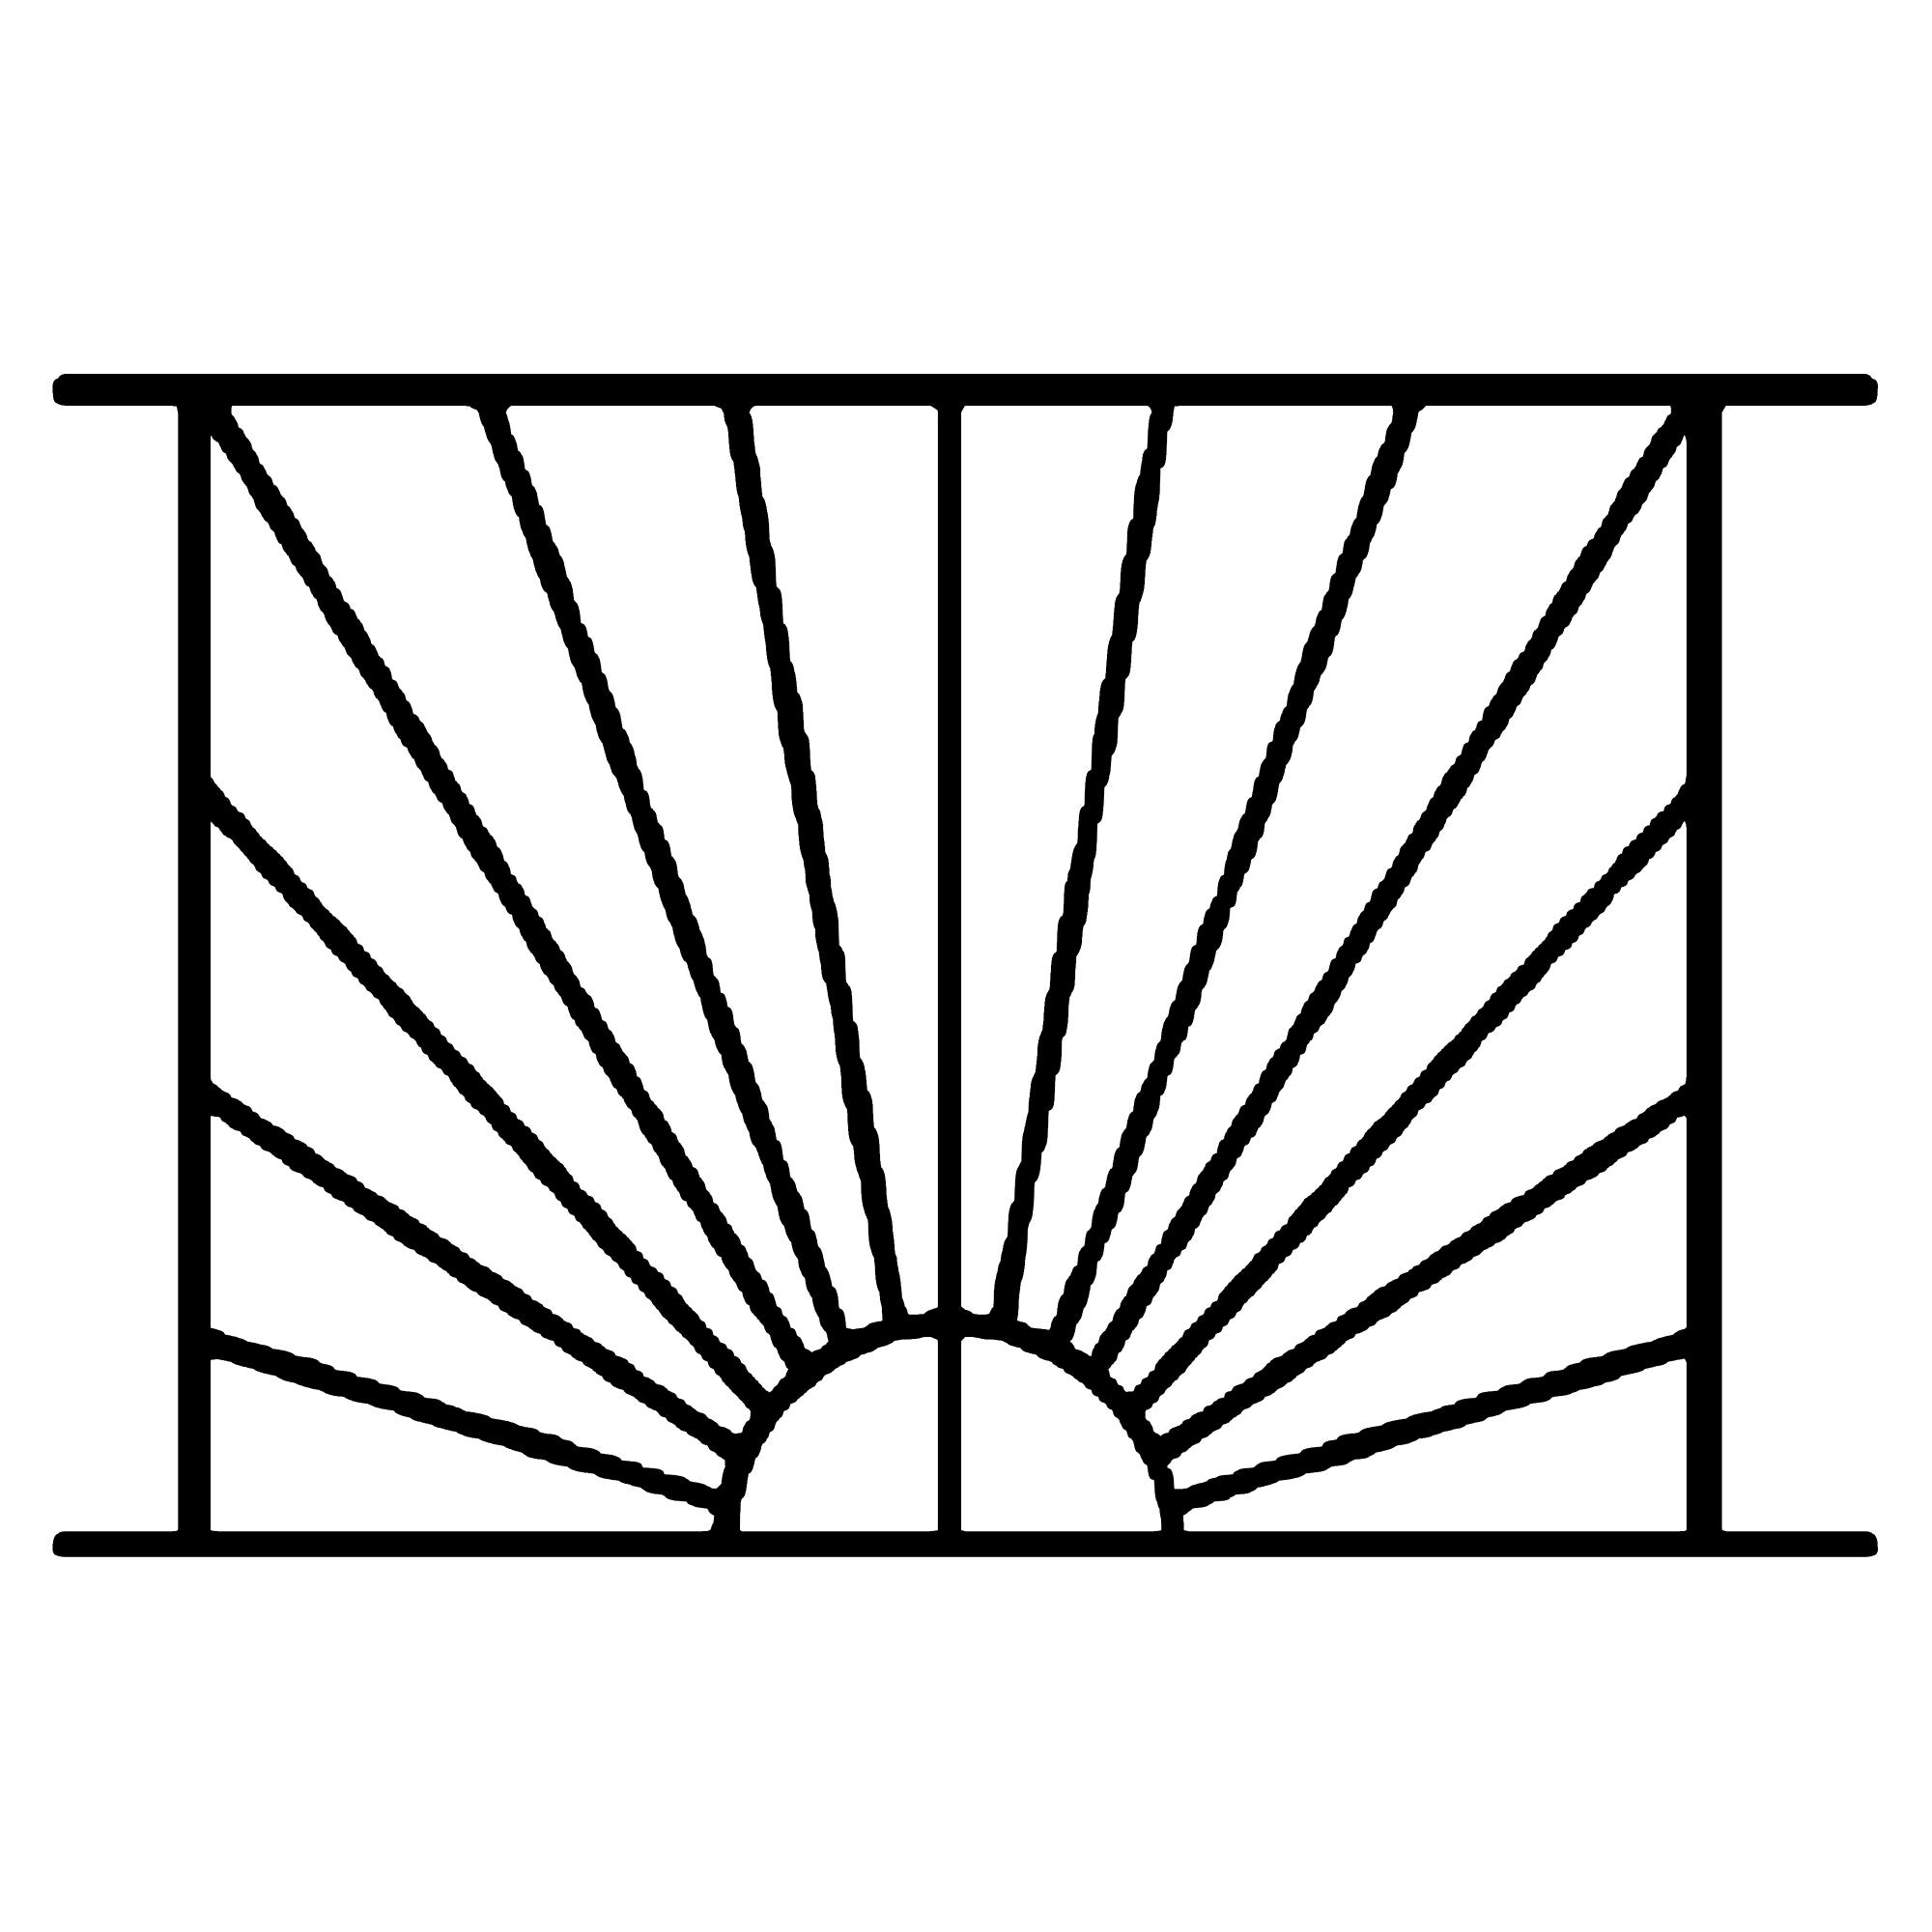 Grille de Defense Soleil pour Fenetre H= 95 cm x L= 100 cm (côte tableau) 3